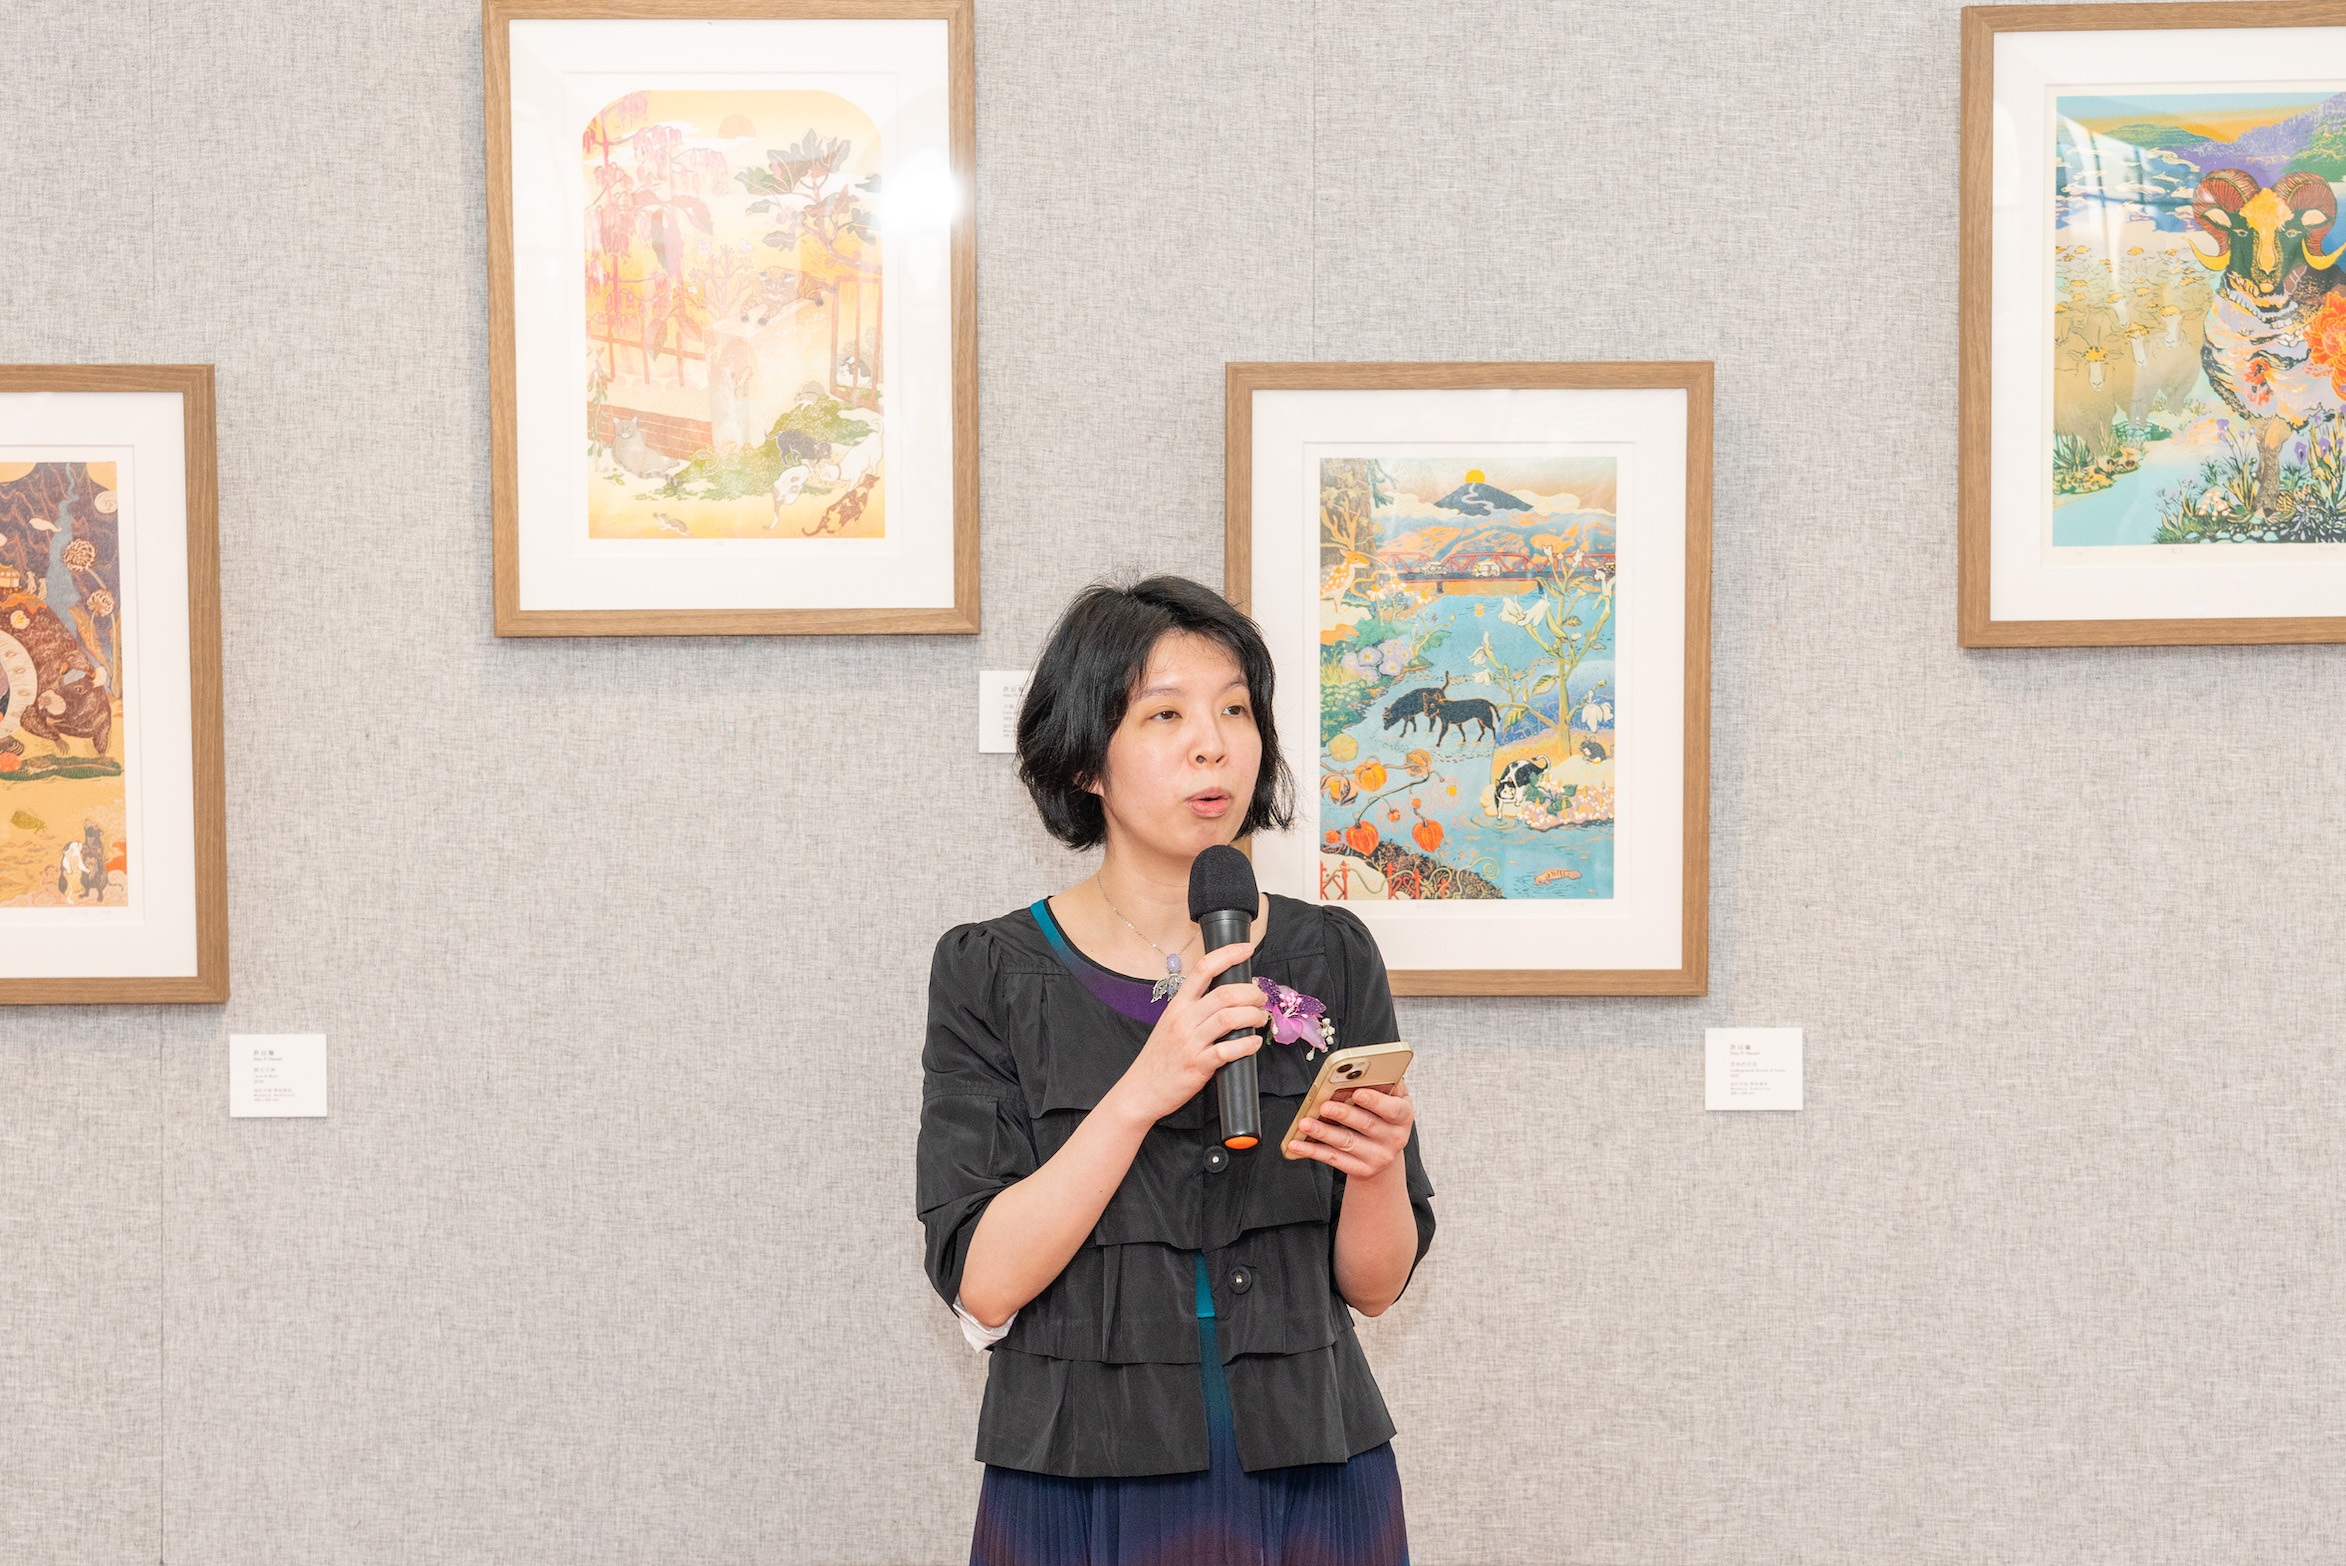 Exposição | A arte da xilogravura no Dr. Sun Yat-sen Memorial Hall